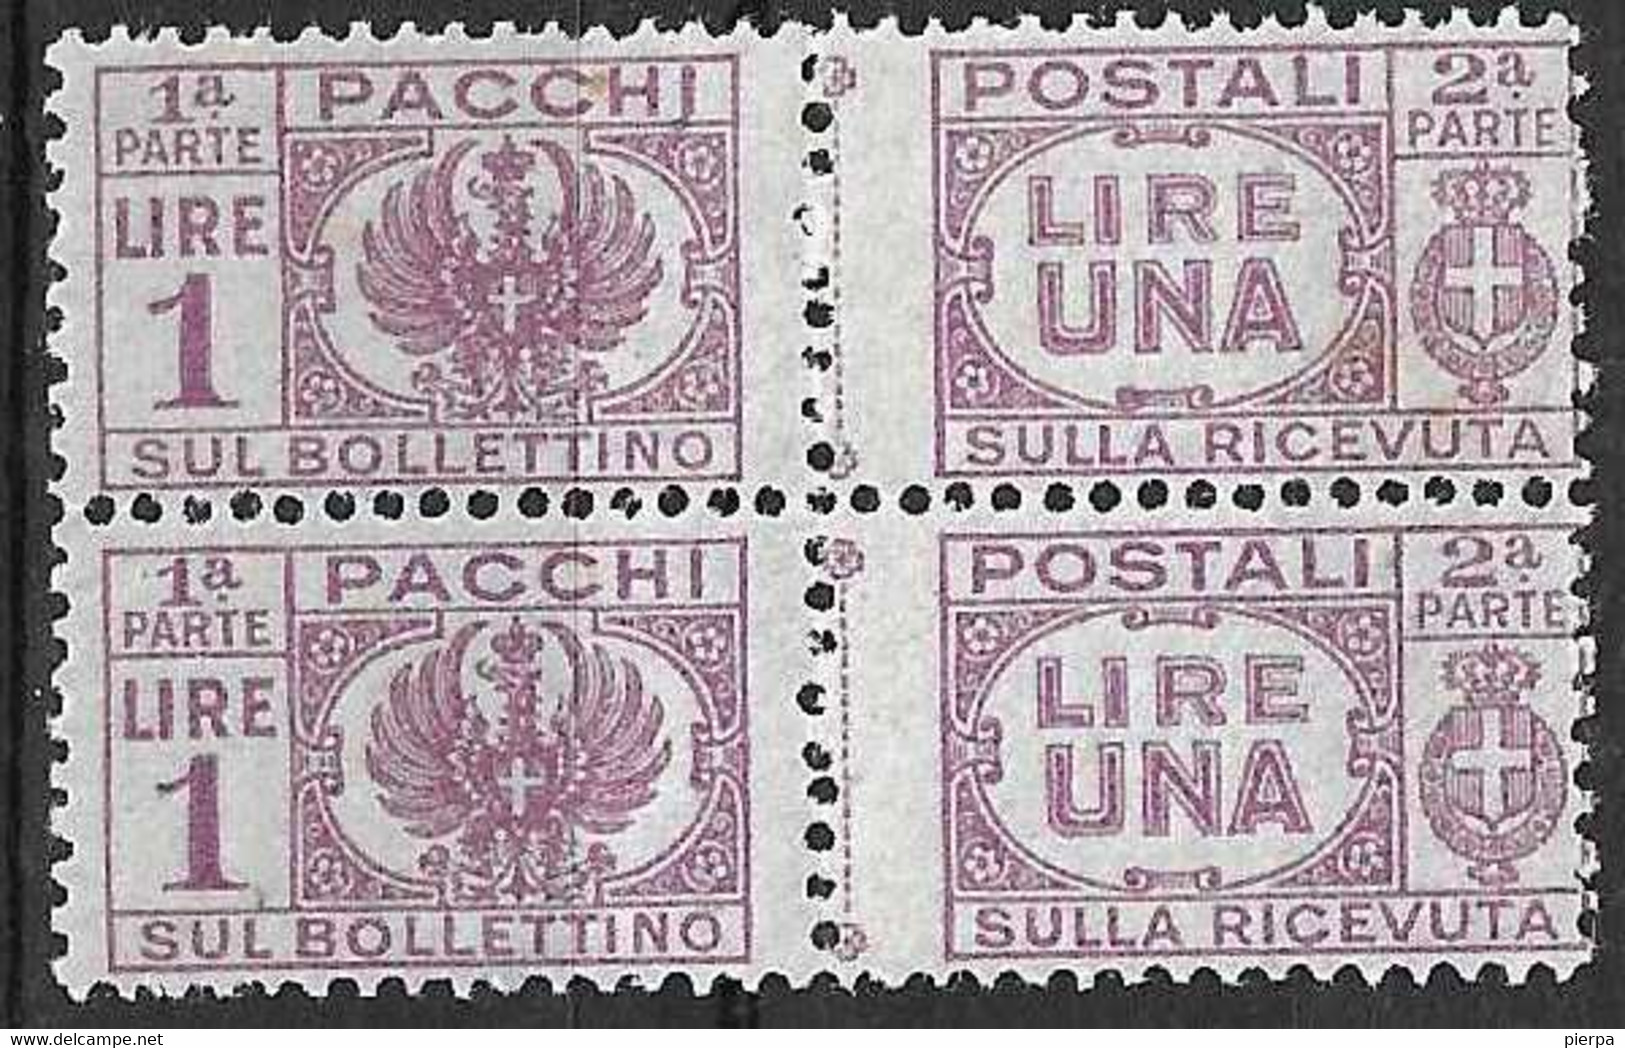 ITALIA - 1946 - PACCHI POSTALI -COPPIA DEL LIRE 1 - FIL CORONA - NUOVO MNH**(SS 60 - YVERT 46 - MICHEL 60) - Postal Parcels